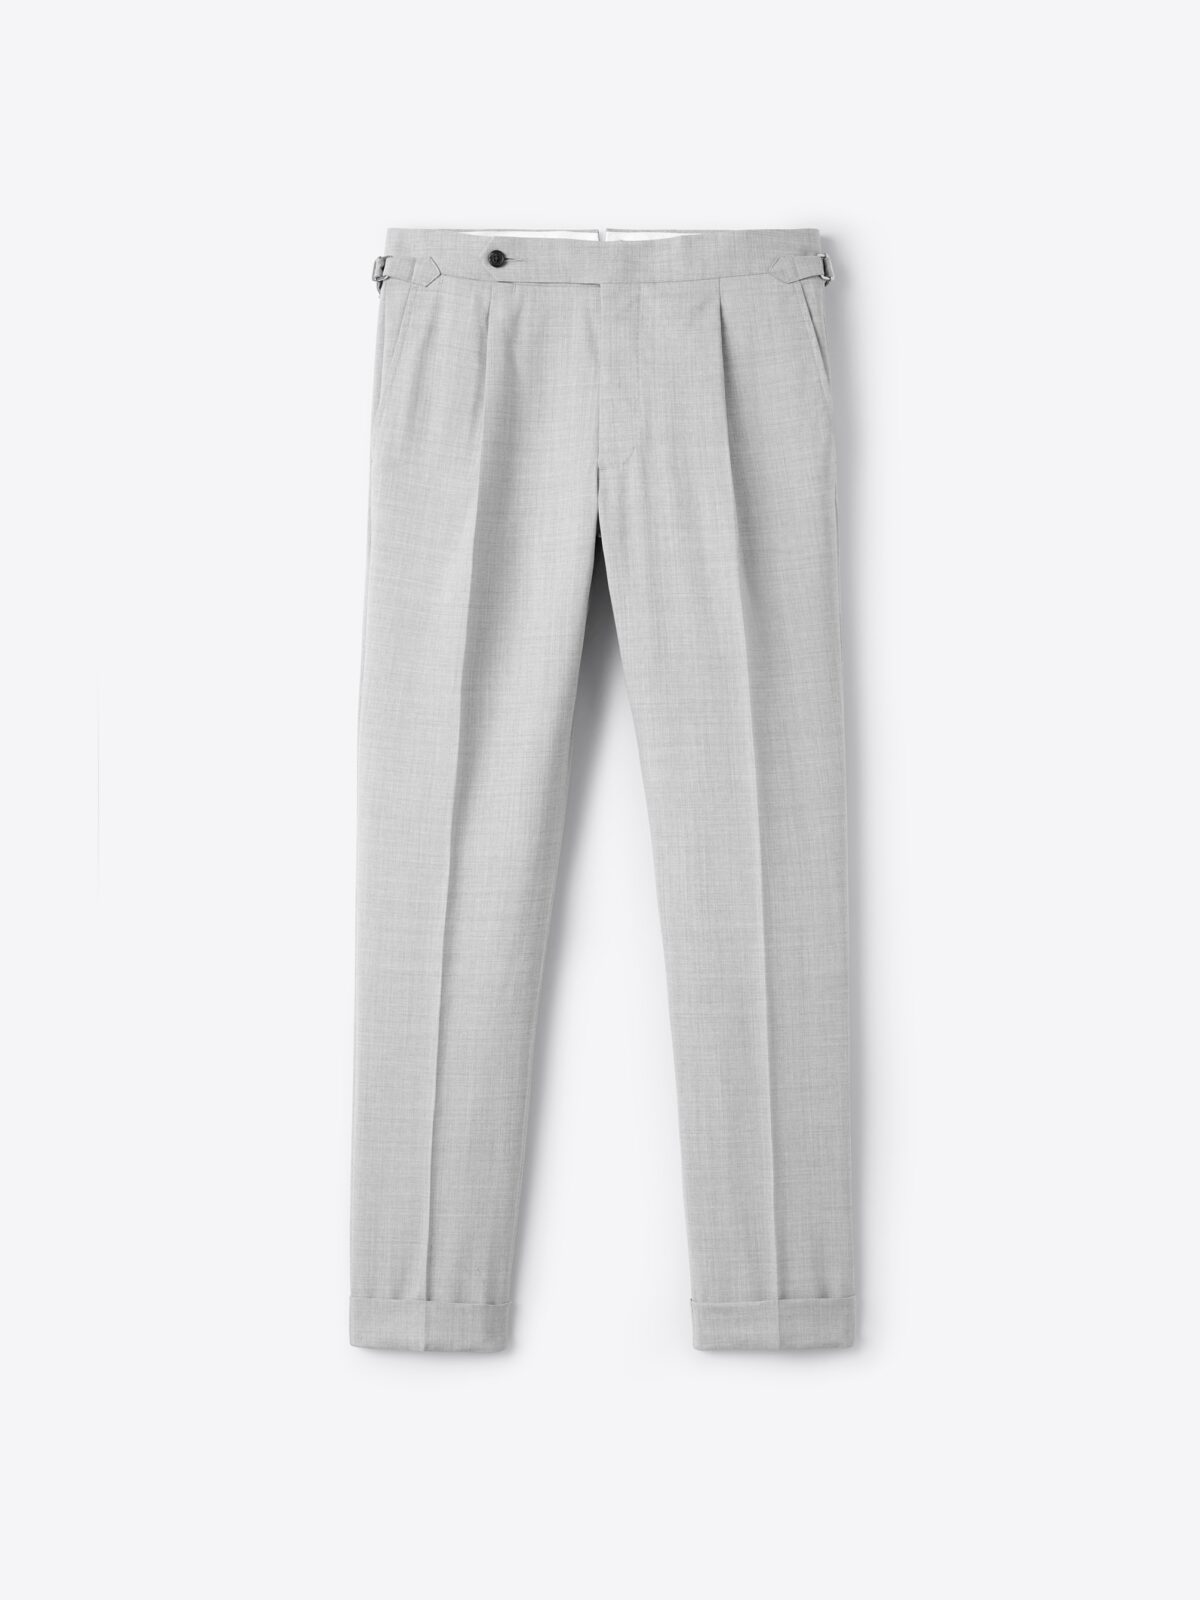 Pearl White Linen Pants For Men – LININ